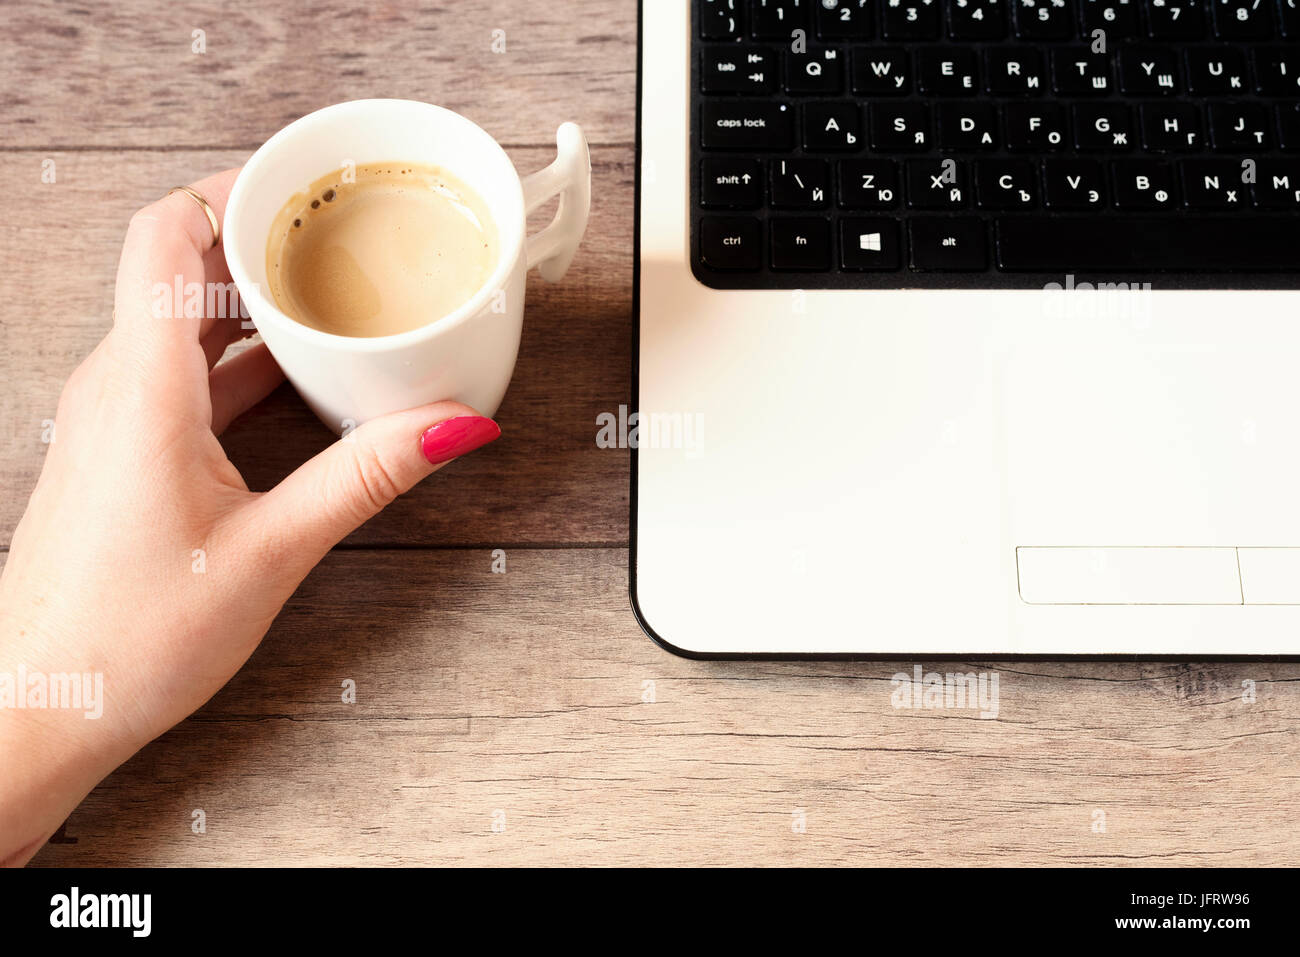 Femme working on laptop in cafe. Tasse de café blanc. Close up of a woman avec joints toriques et les ongles longs, peint avec laque rouge. En utilisant internet. H Banque D'Images